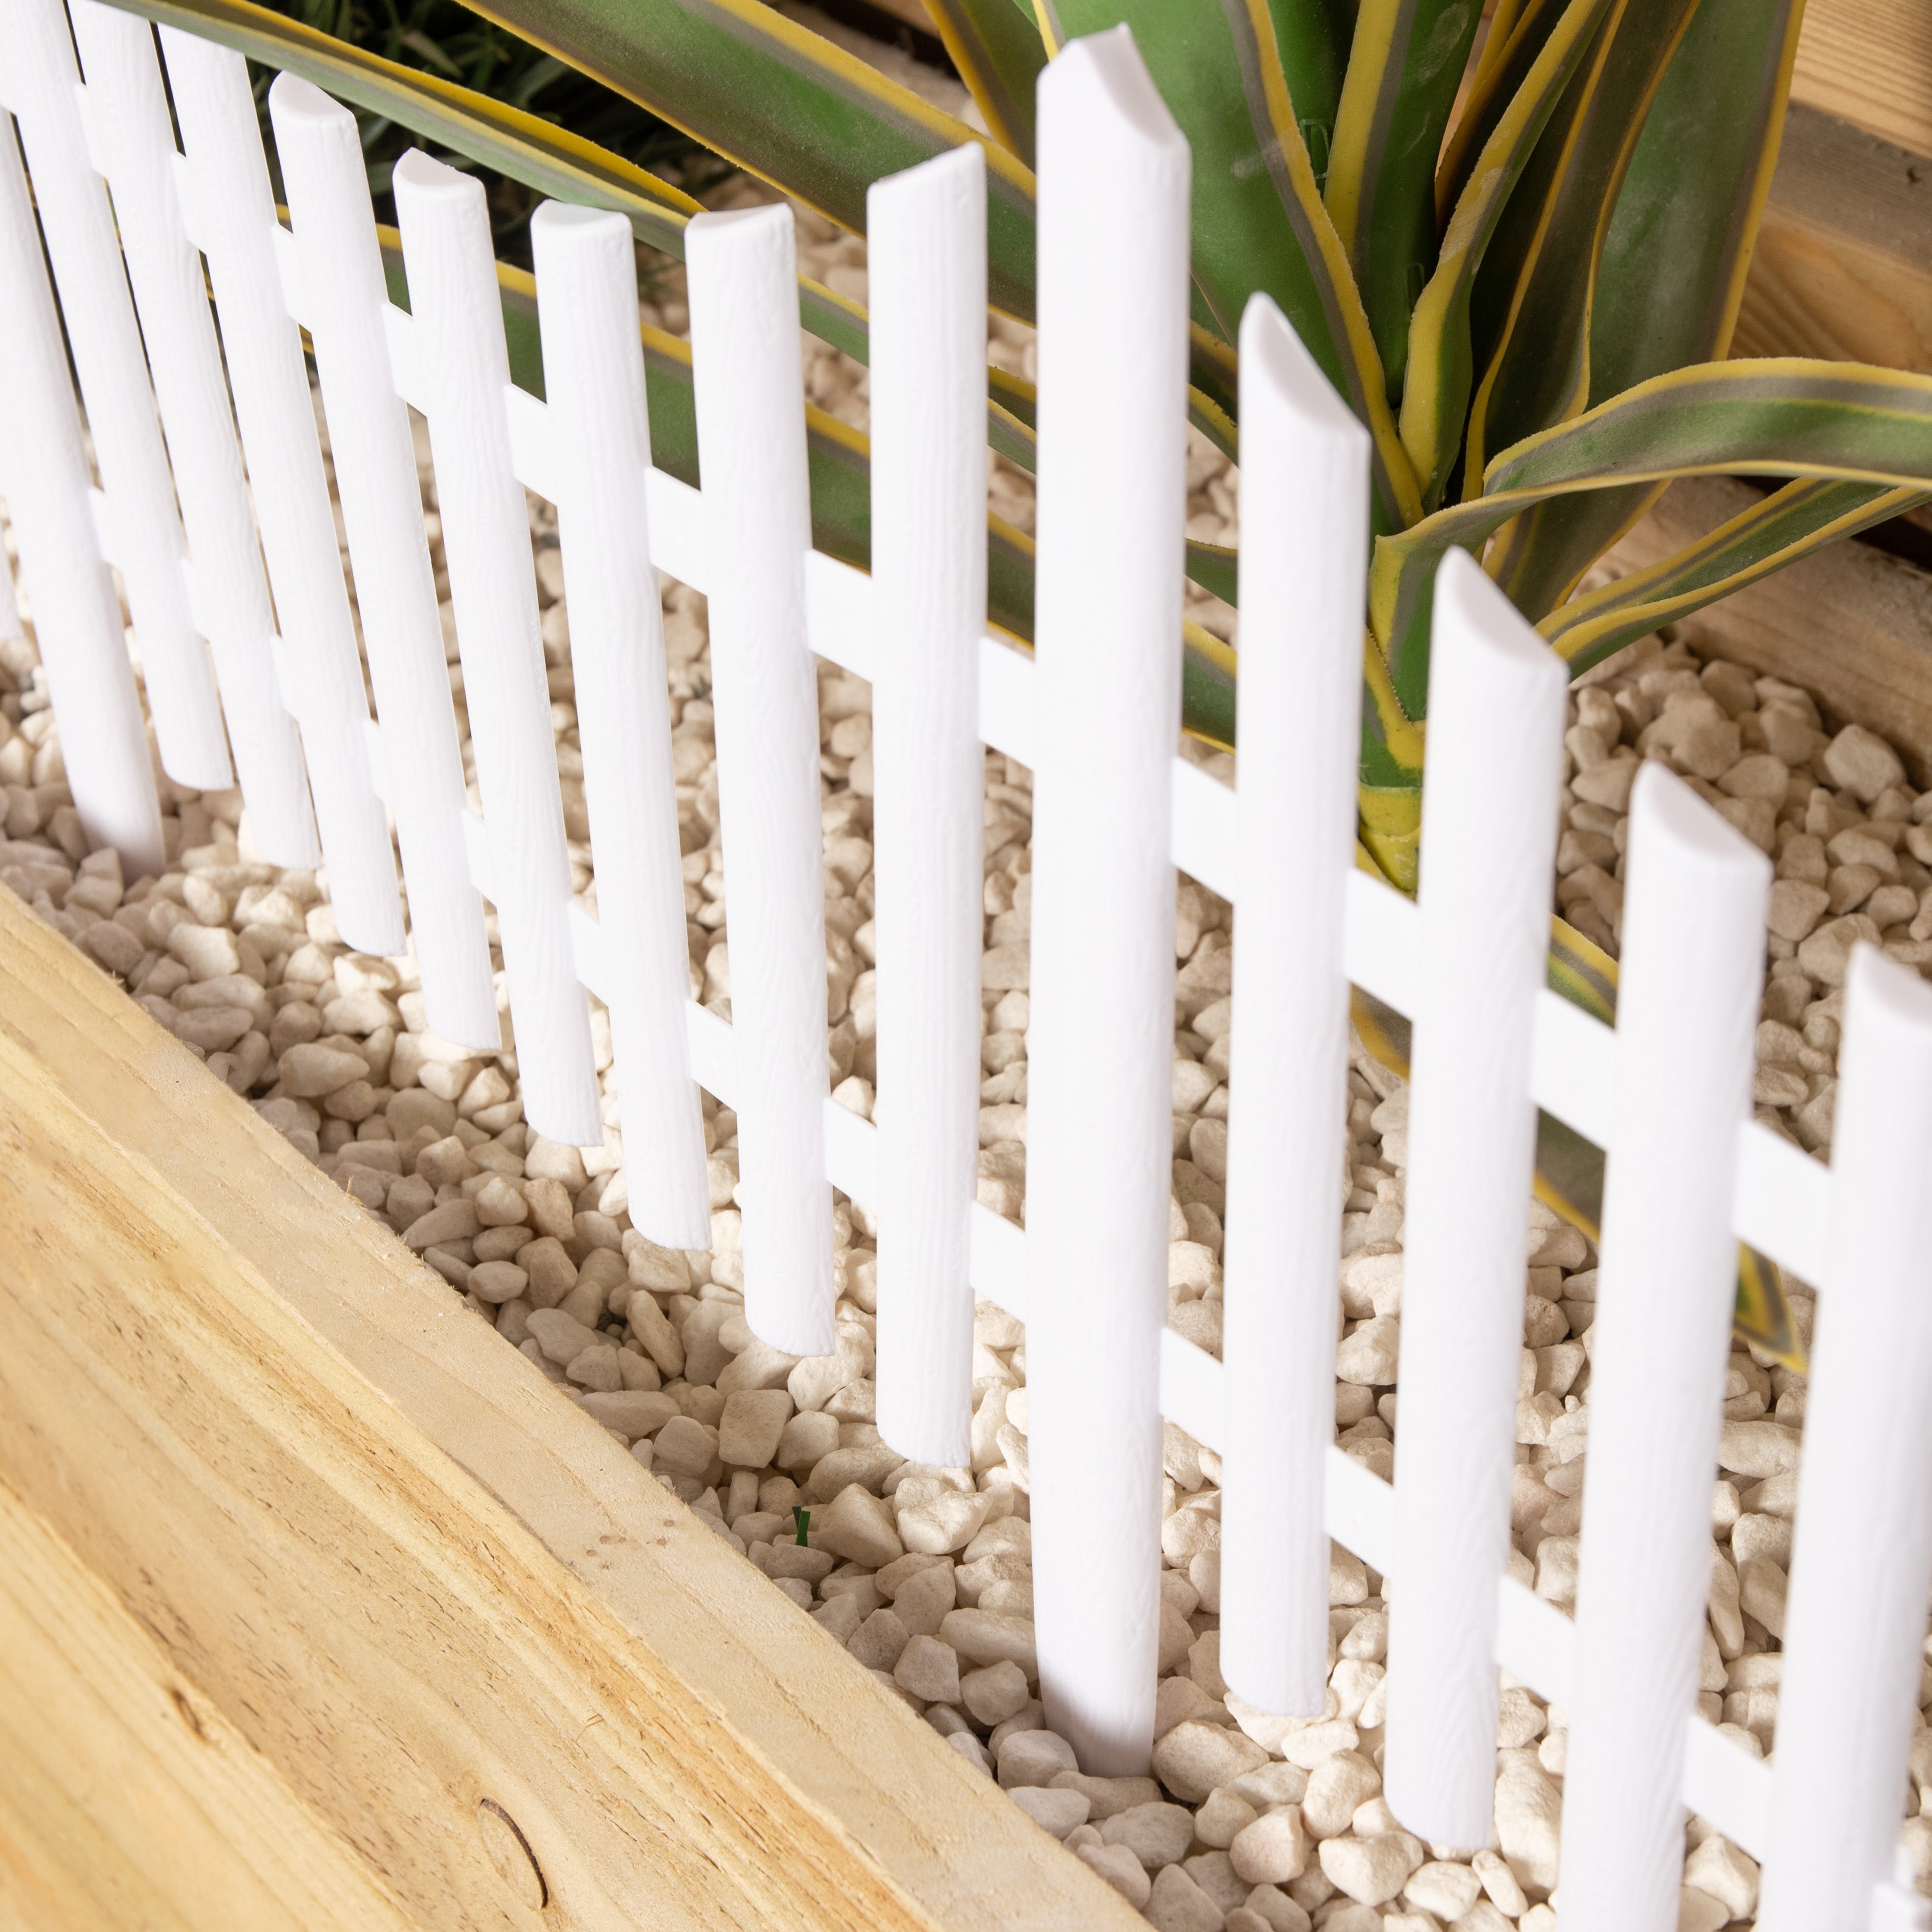 3 x 33cm 4 Piece Set White Wood Effect Picket Fence Garden Edging 